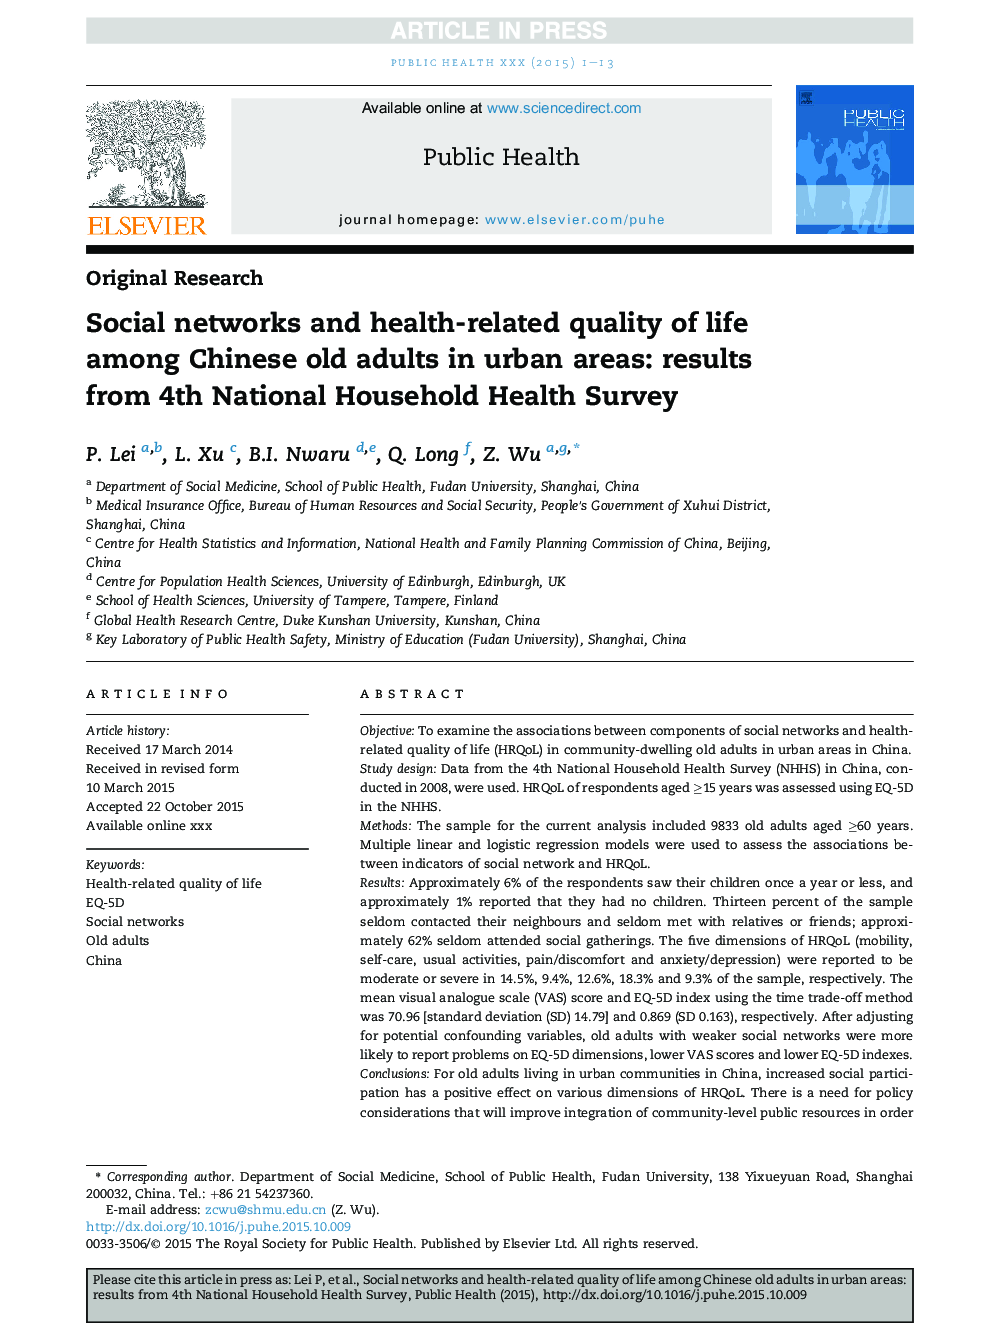 شبکه های اجتماعی و کیفیت زندگی مرتبط با سلامت در میان بزرگسالان چینی در مناطق شهری: نتایج چهارمین بررسی ملی بهداشت عمومی 